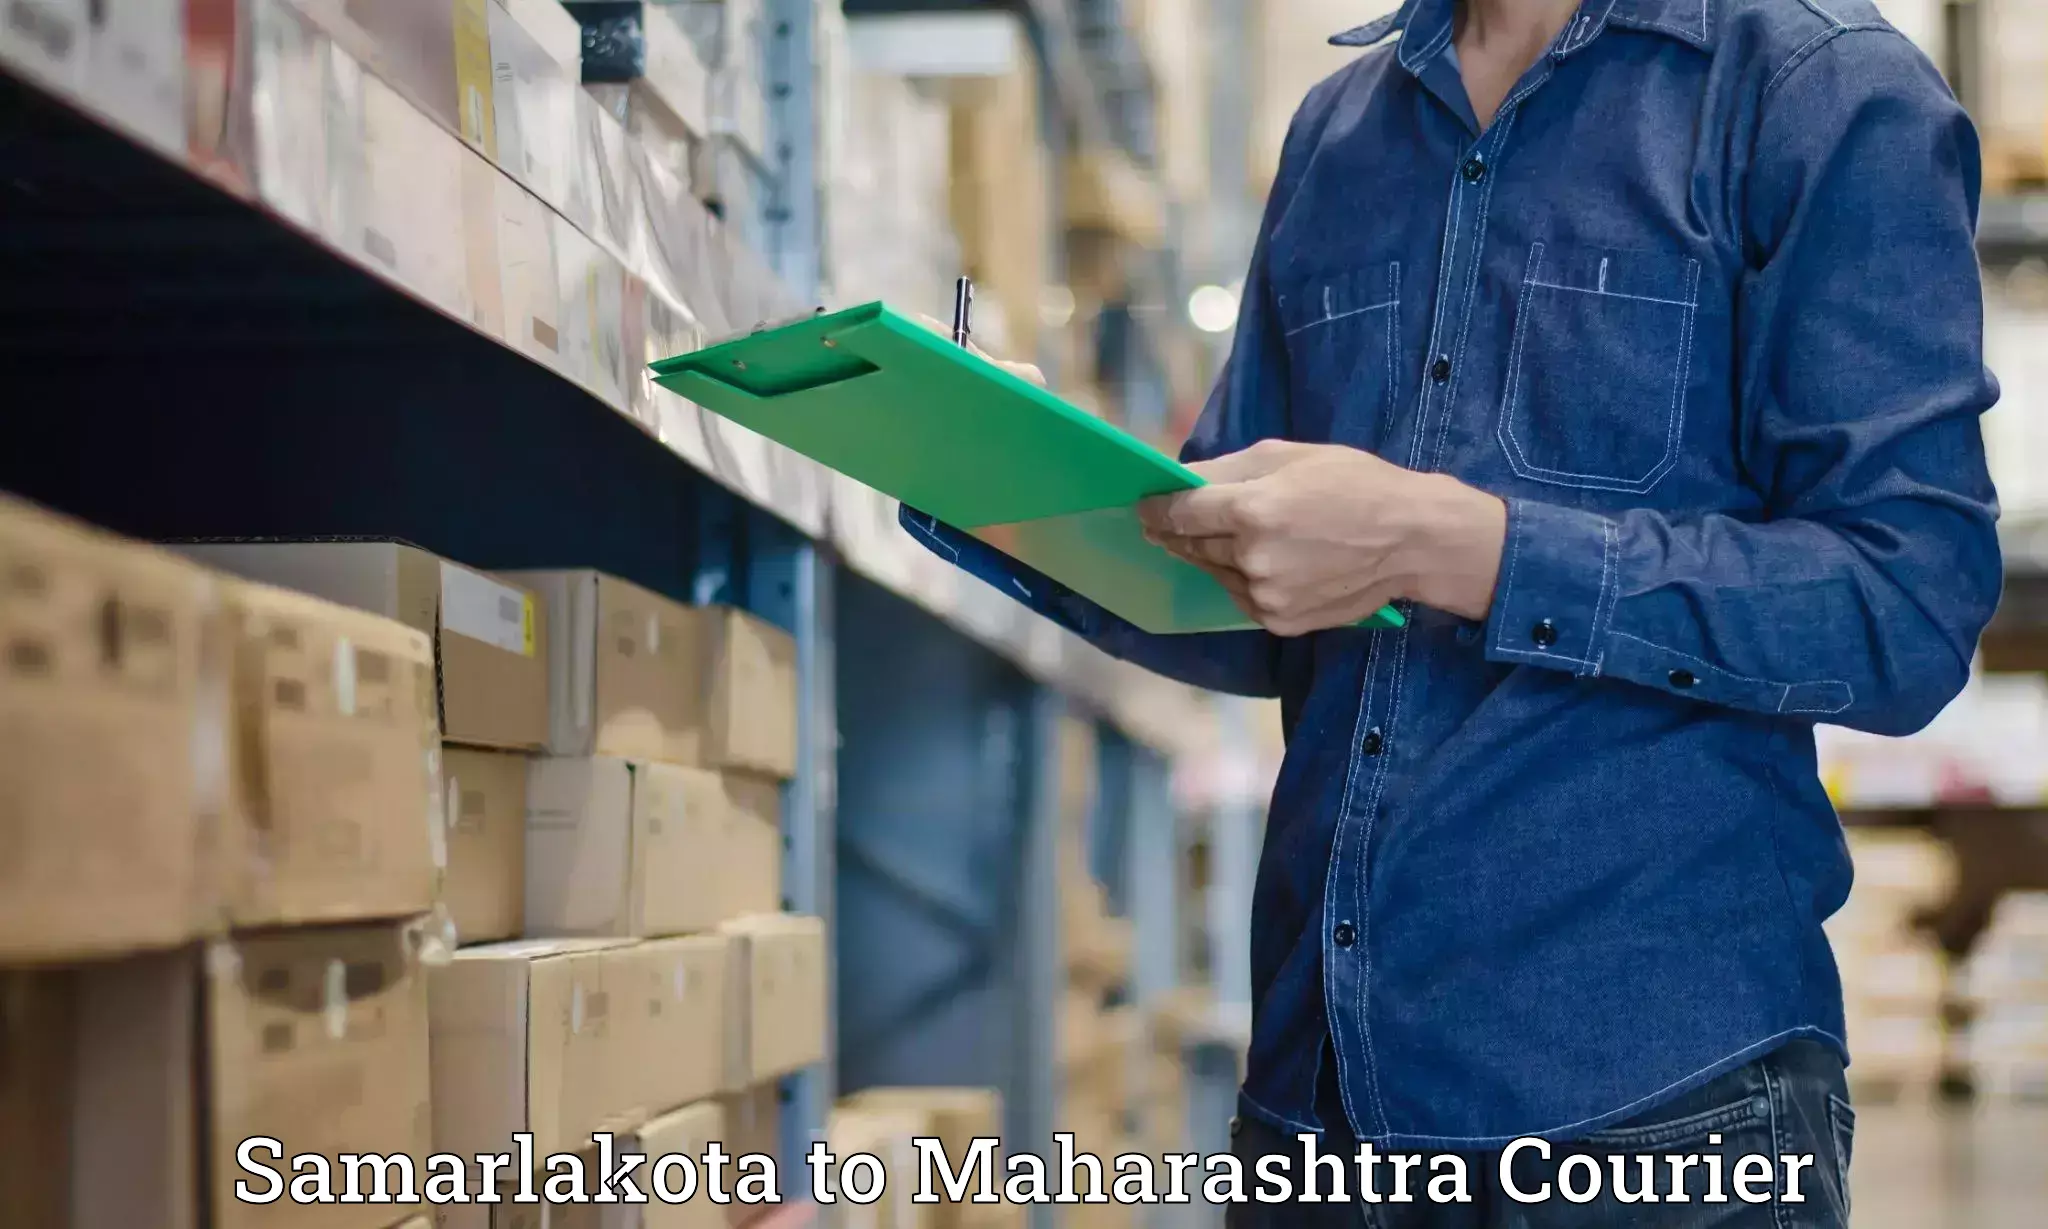 Luggage delivery system Samarlakota to Maharashtra